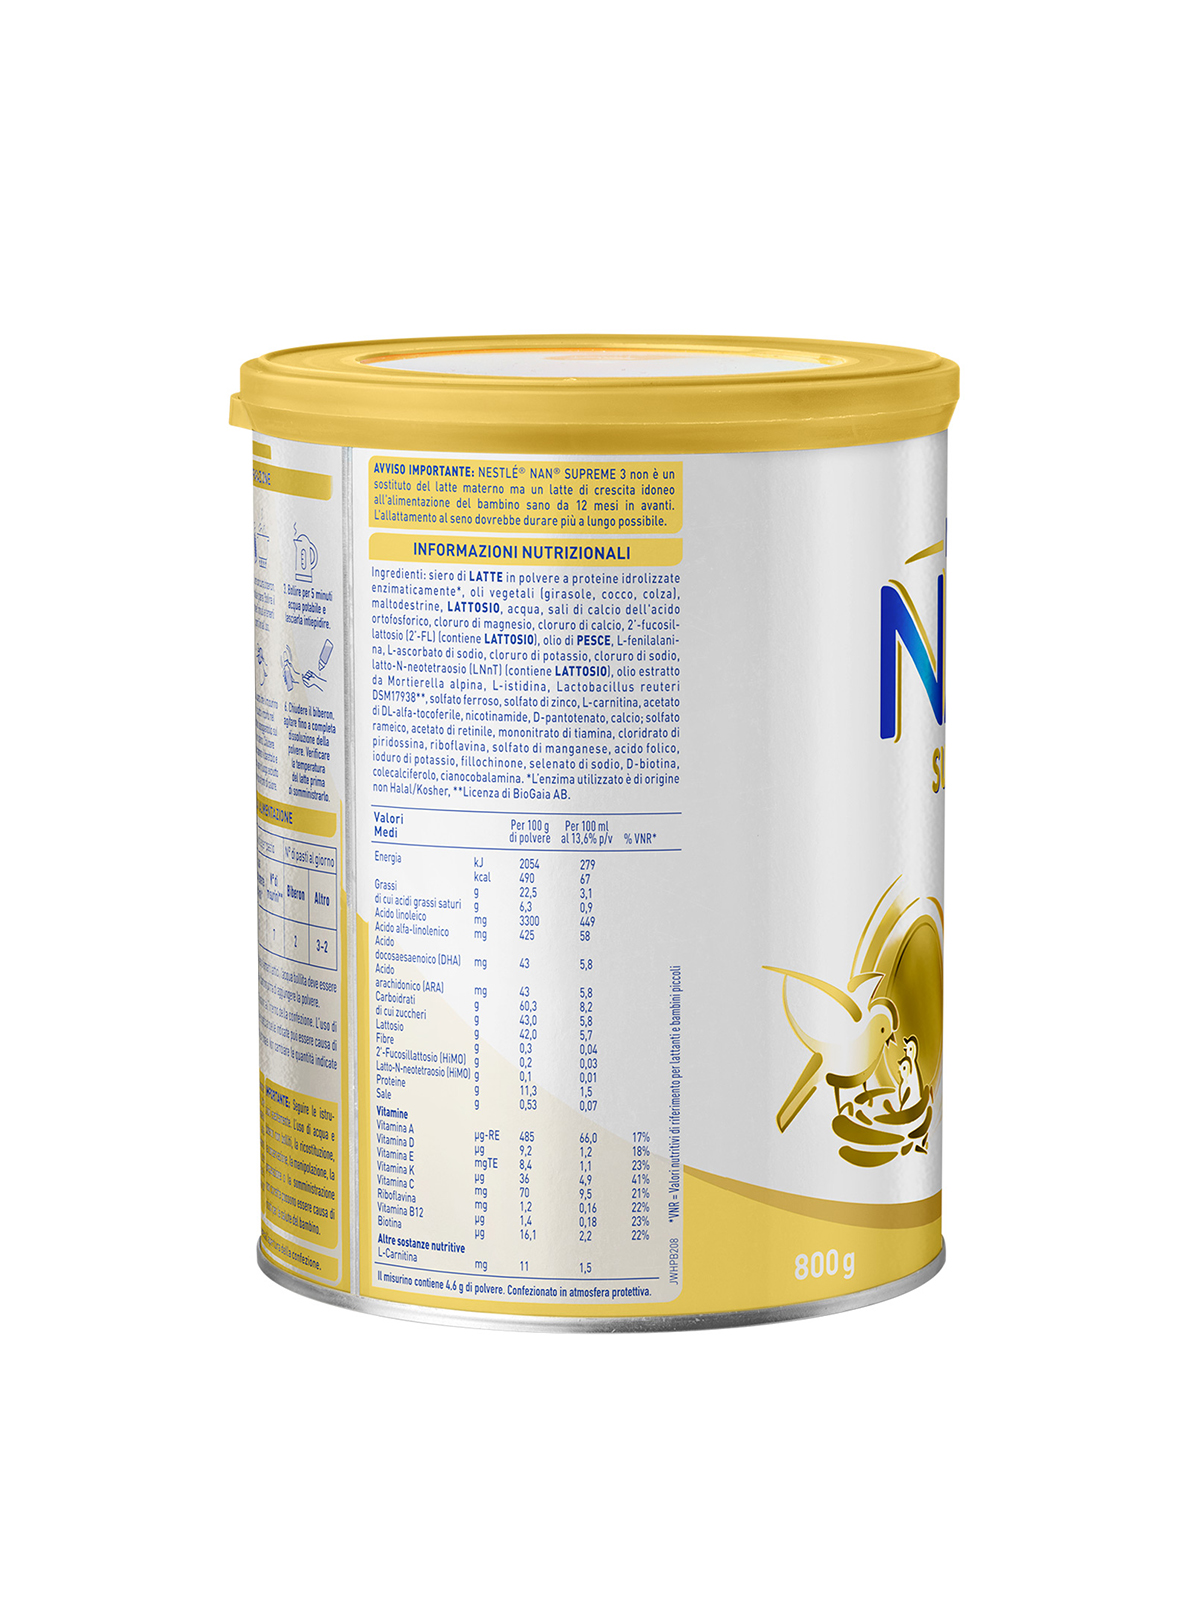 Nestlé nan supreme 3 da 12 mesi latte di crescita in polvere latta 800g - Nestlé